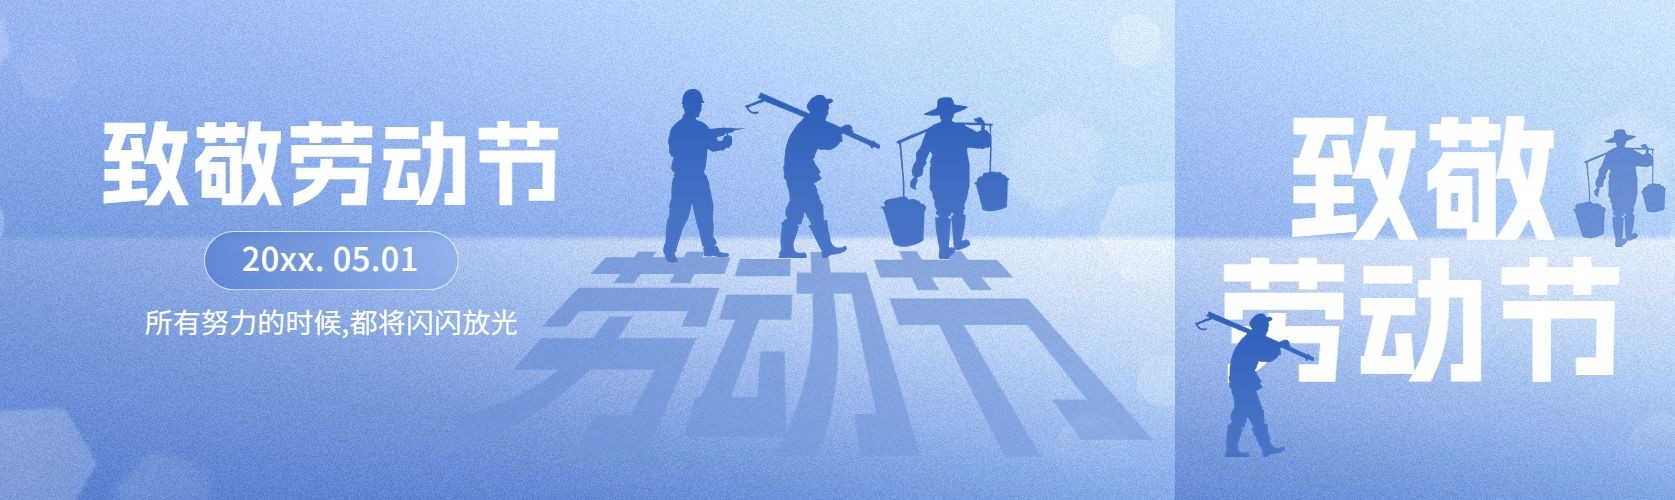 五一劳动节节日祝福剪影公众号首图